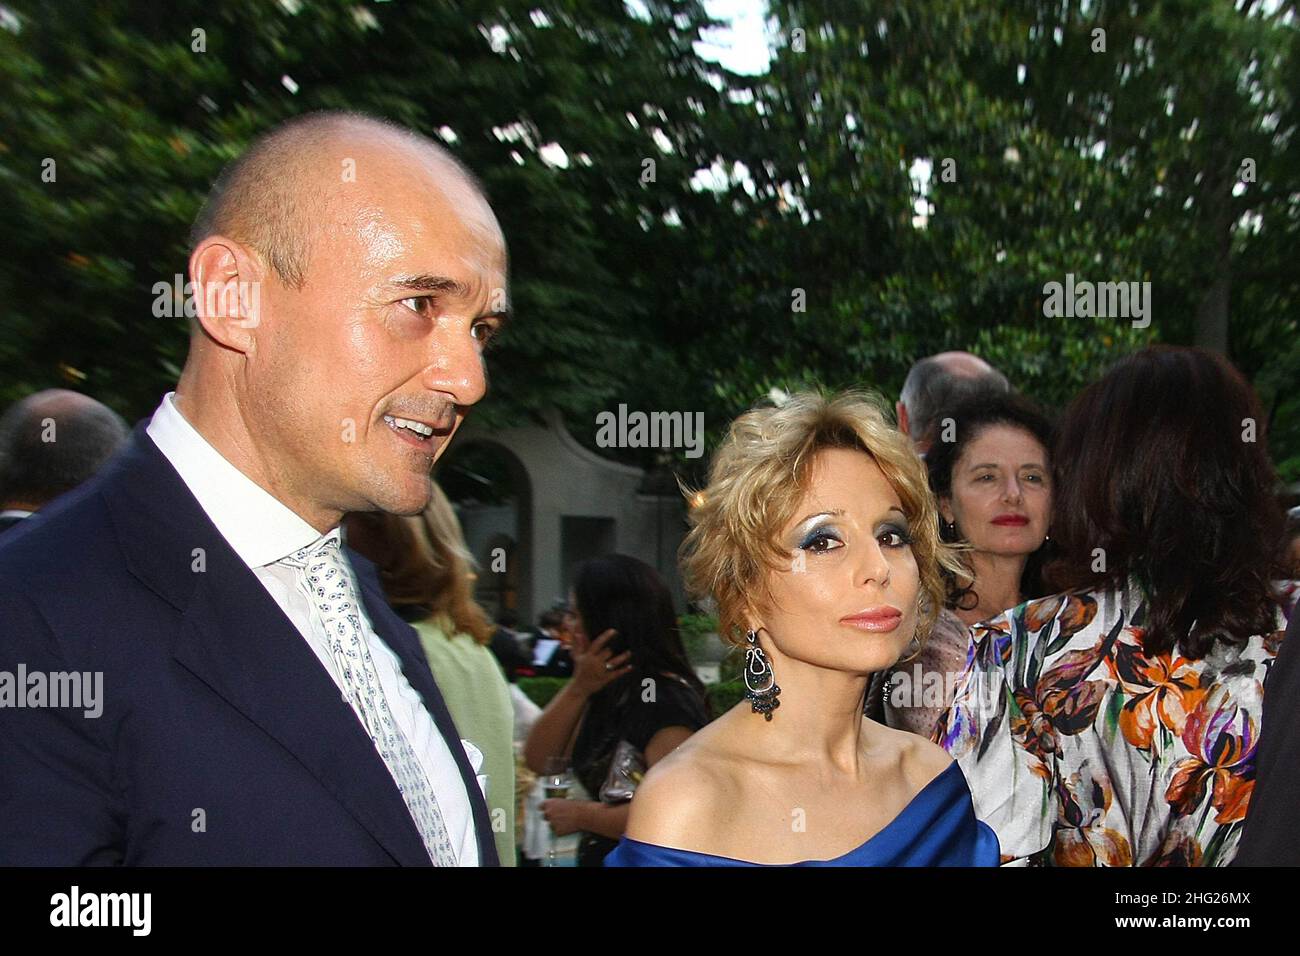 Alfonso Signorini and Marina Berlusconi at a party for Grazia magazine at villa Necchi Campiglio, Milan Stock Photo